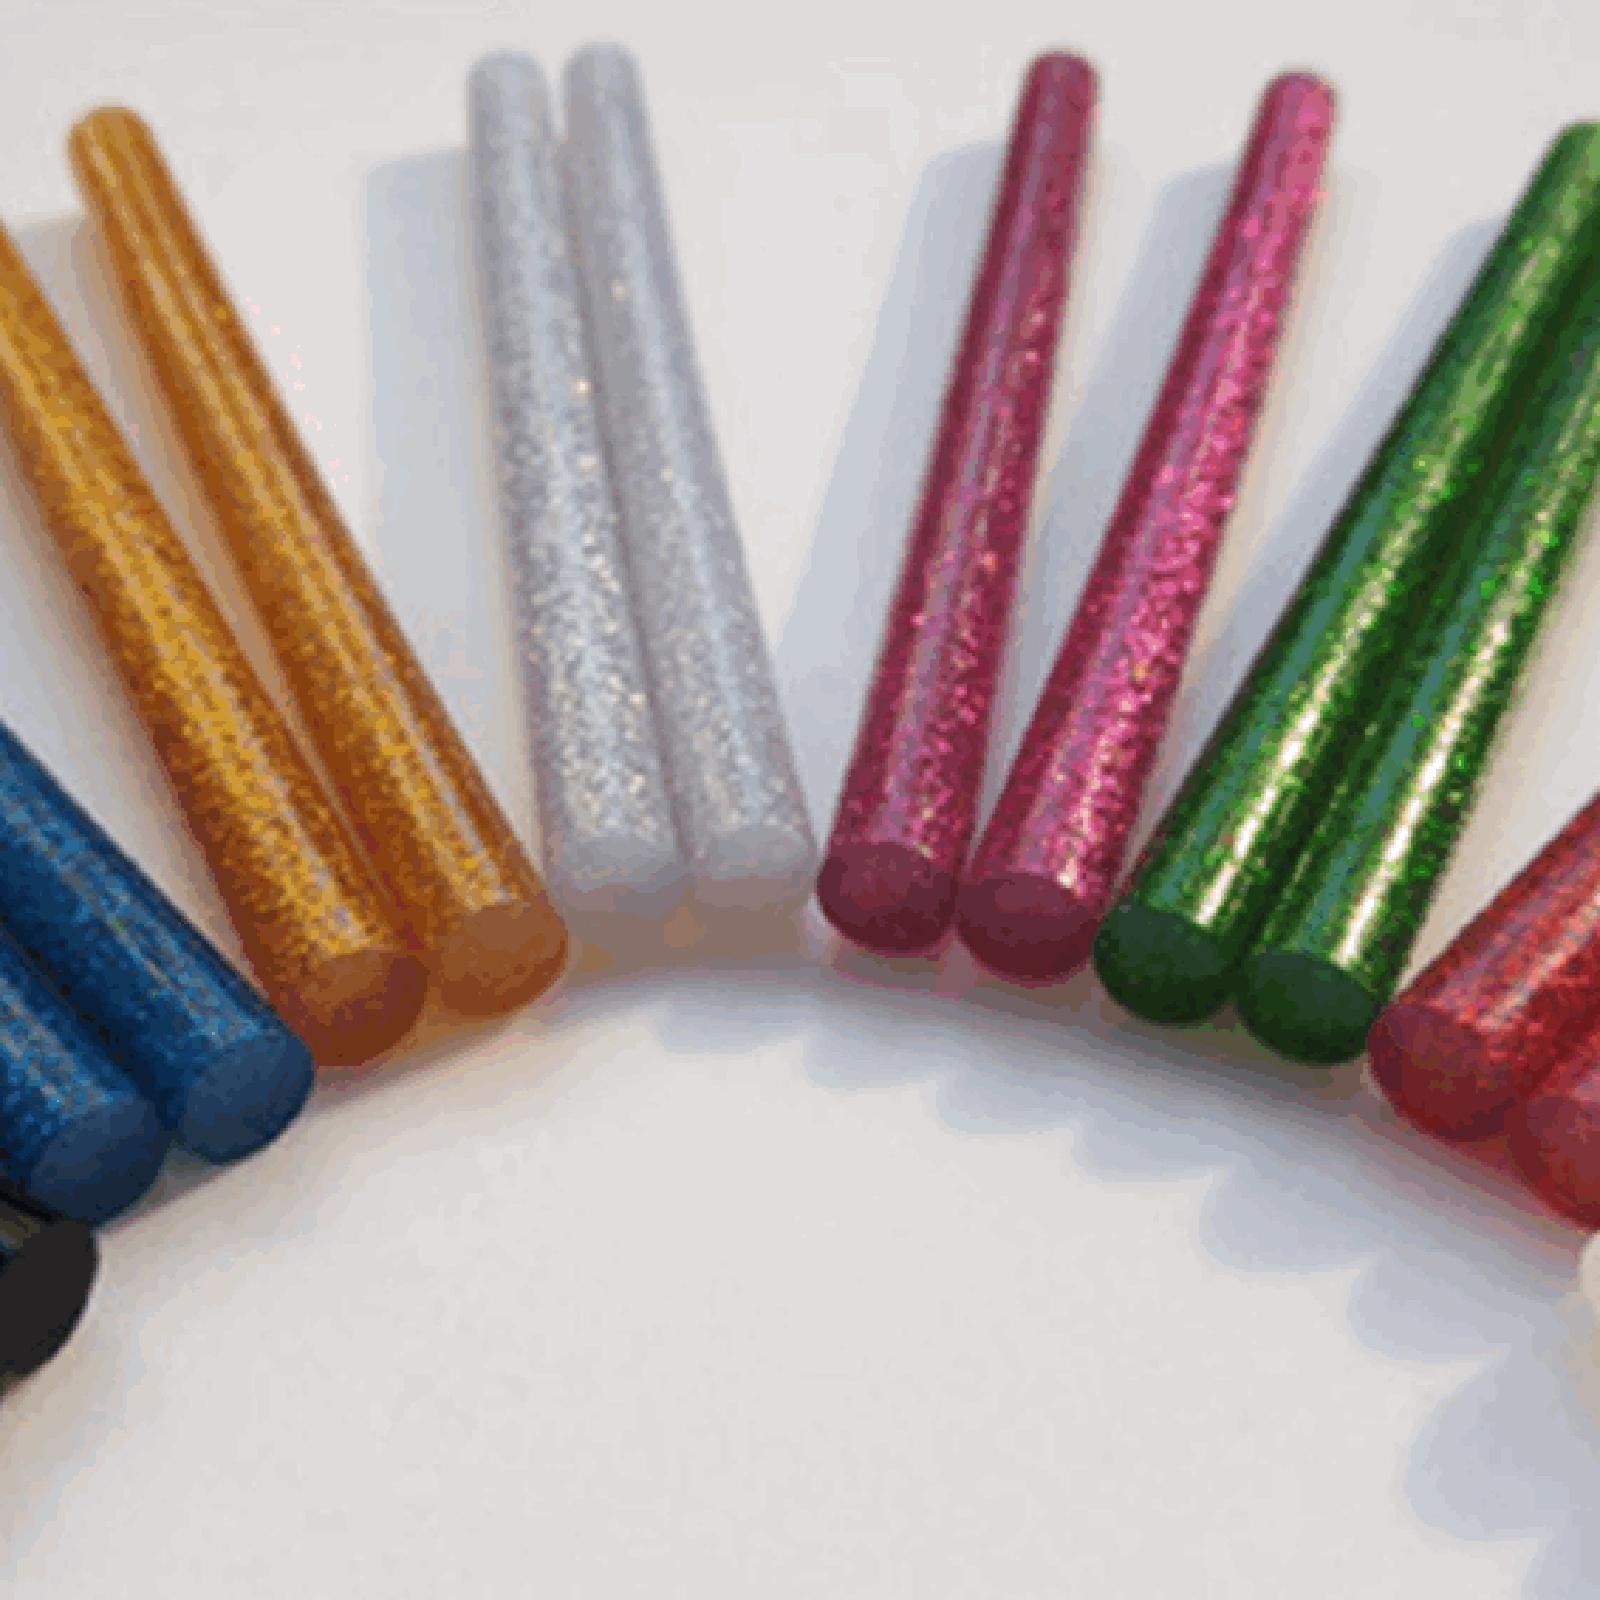 10x Colored Hot Melt Glue Sticks Color Hot Glue Sticks Glue Sticks for Cards DIY Sealing Holiday Craft